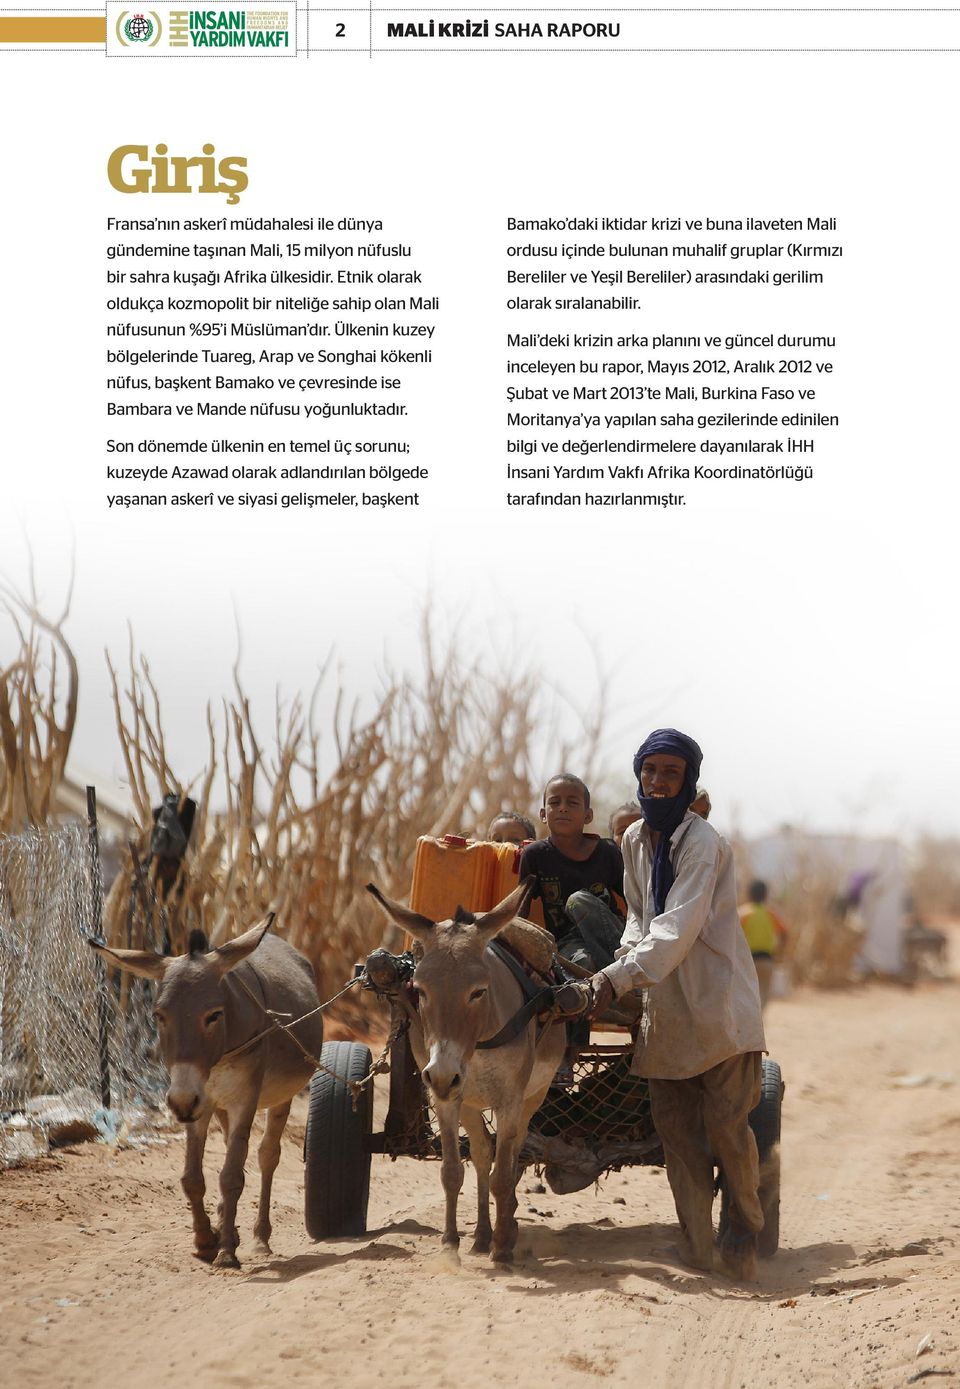 Ülkenin kuzey bölgelerinde Tuareg, Arap ve Songhai kökenli nüfus, başkent Bamako ve çevresinde ise Bambara ve Mande nüfusu yoğunluktadır.